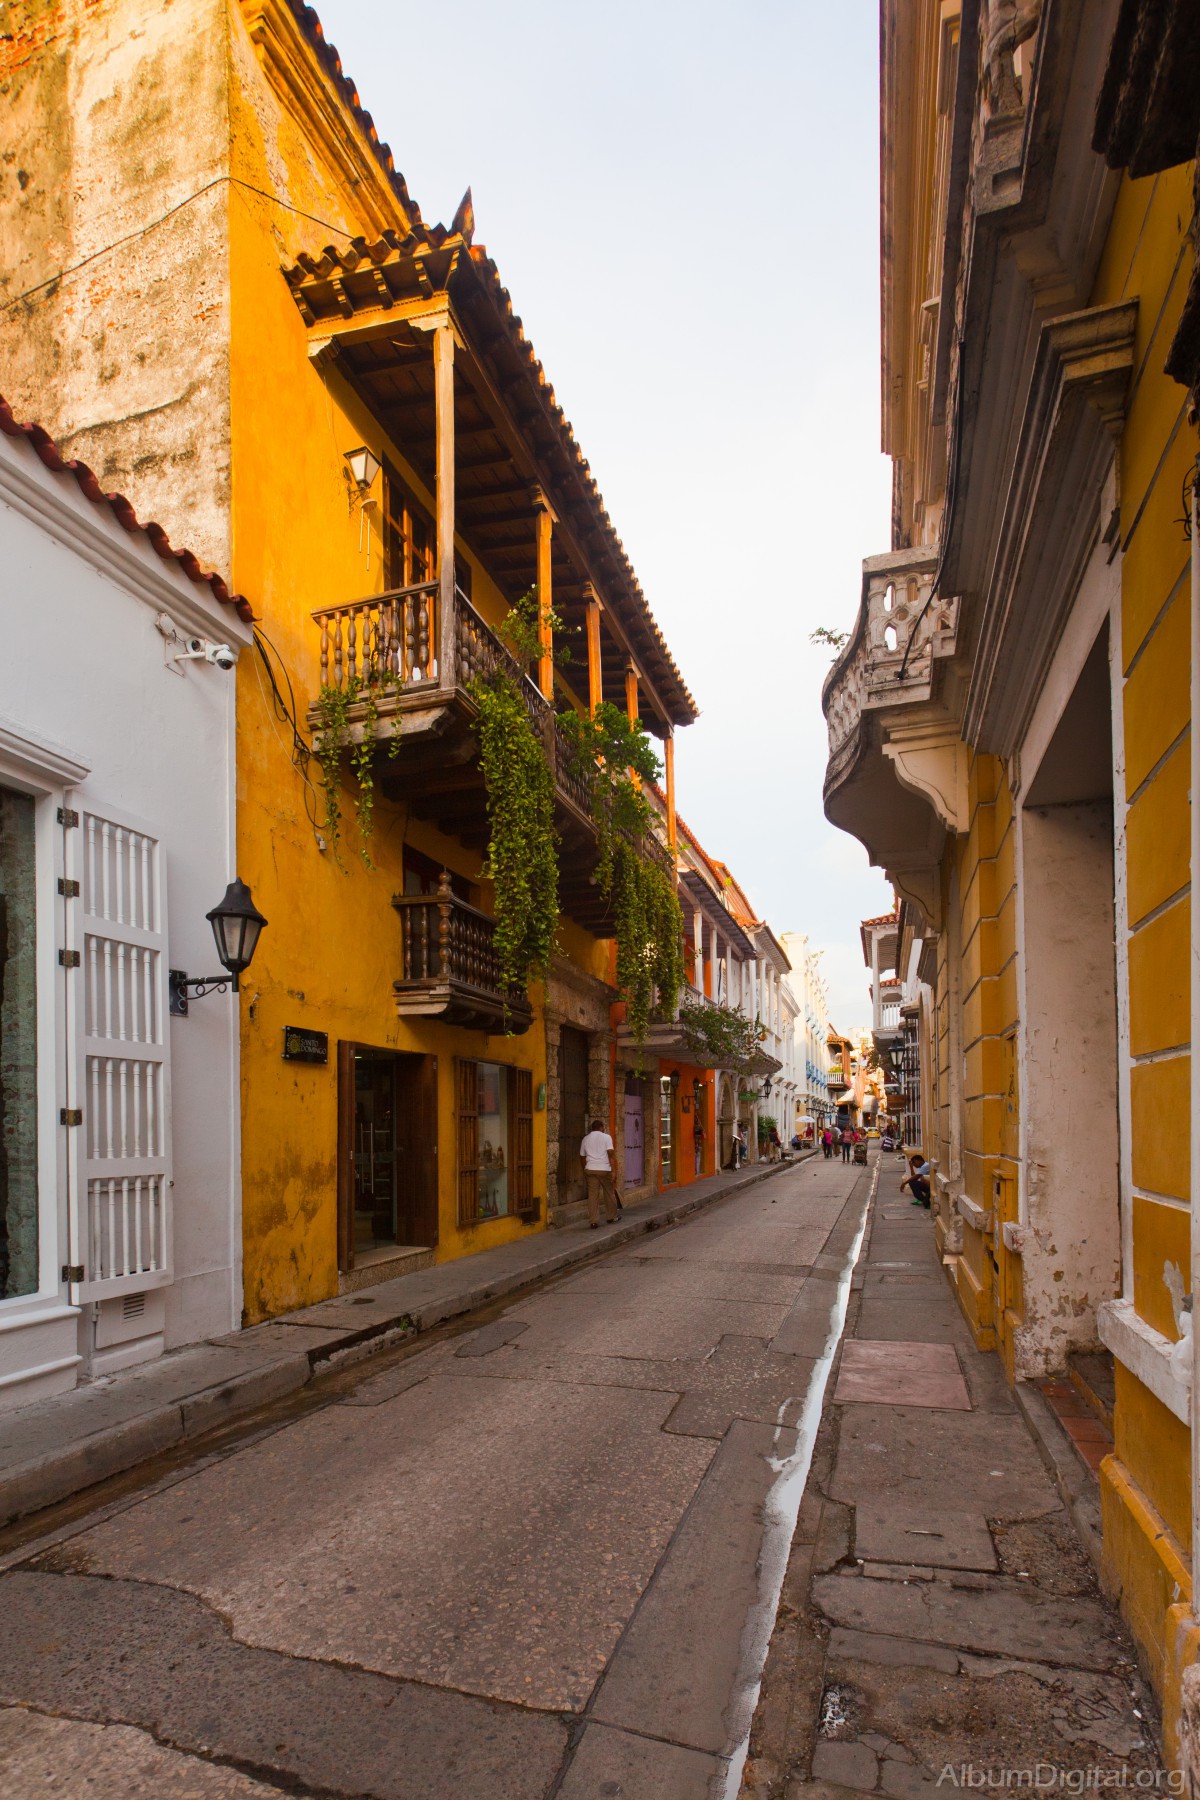 Calle de la Cartagena colonial